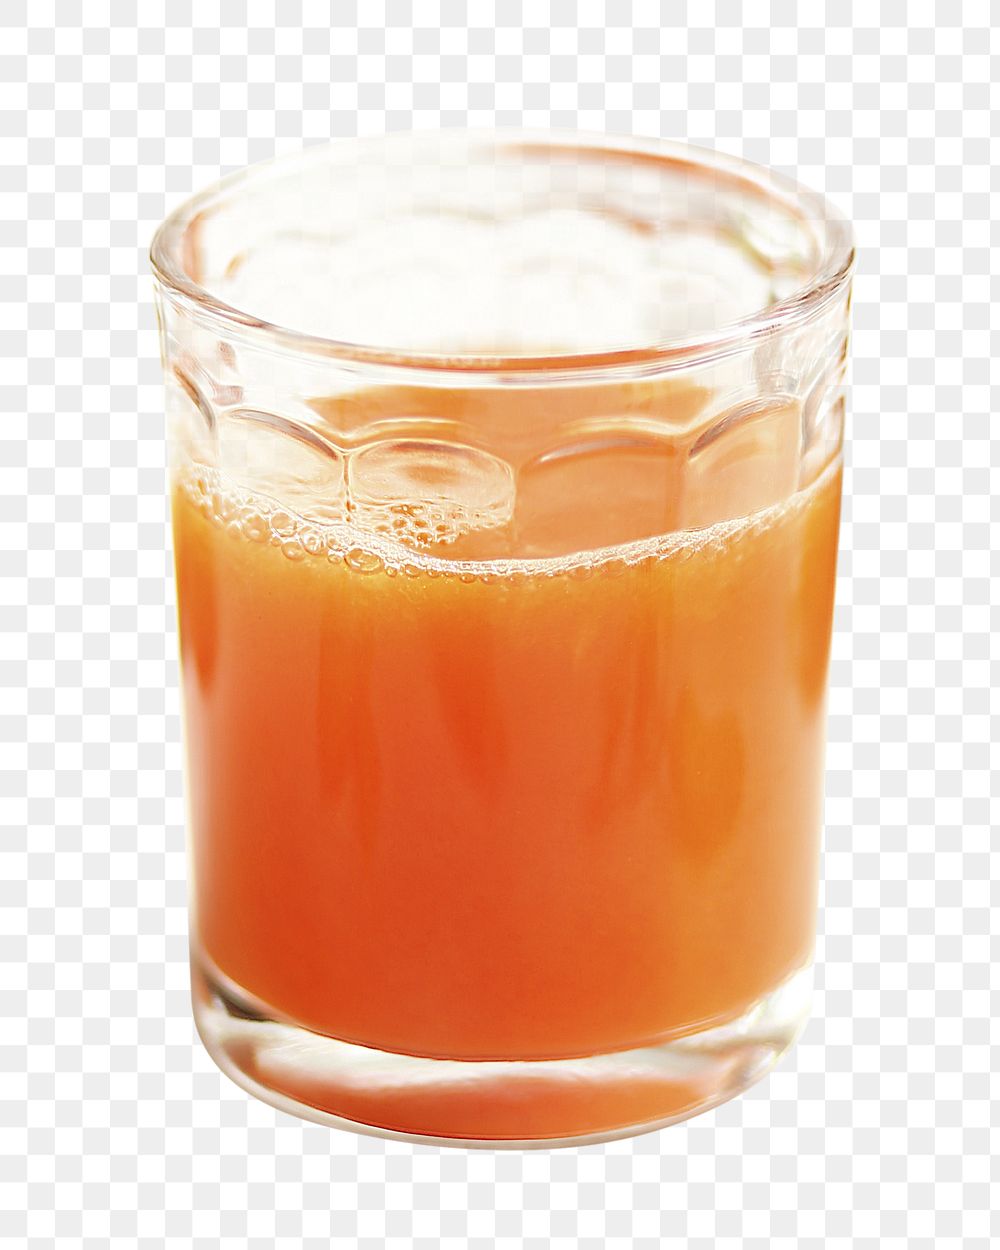 Orange juice png sticker, transparent background